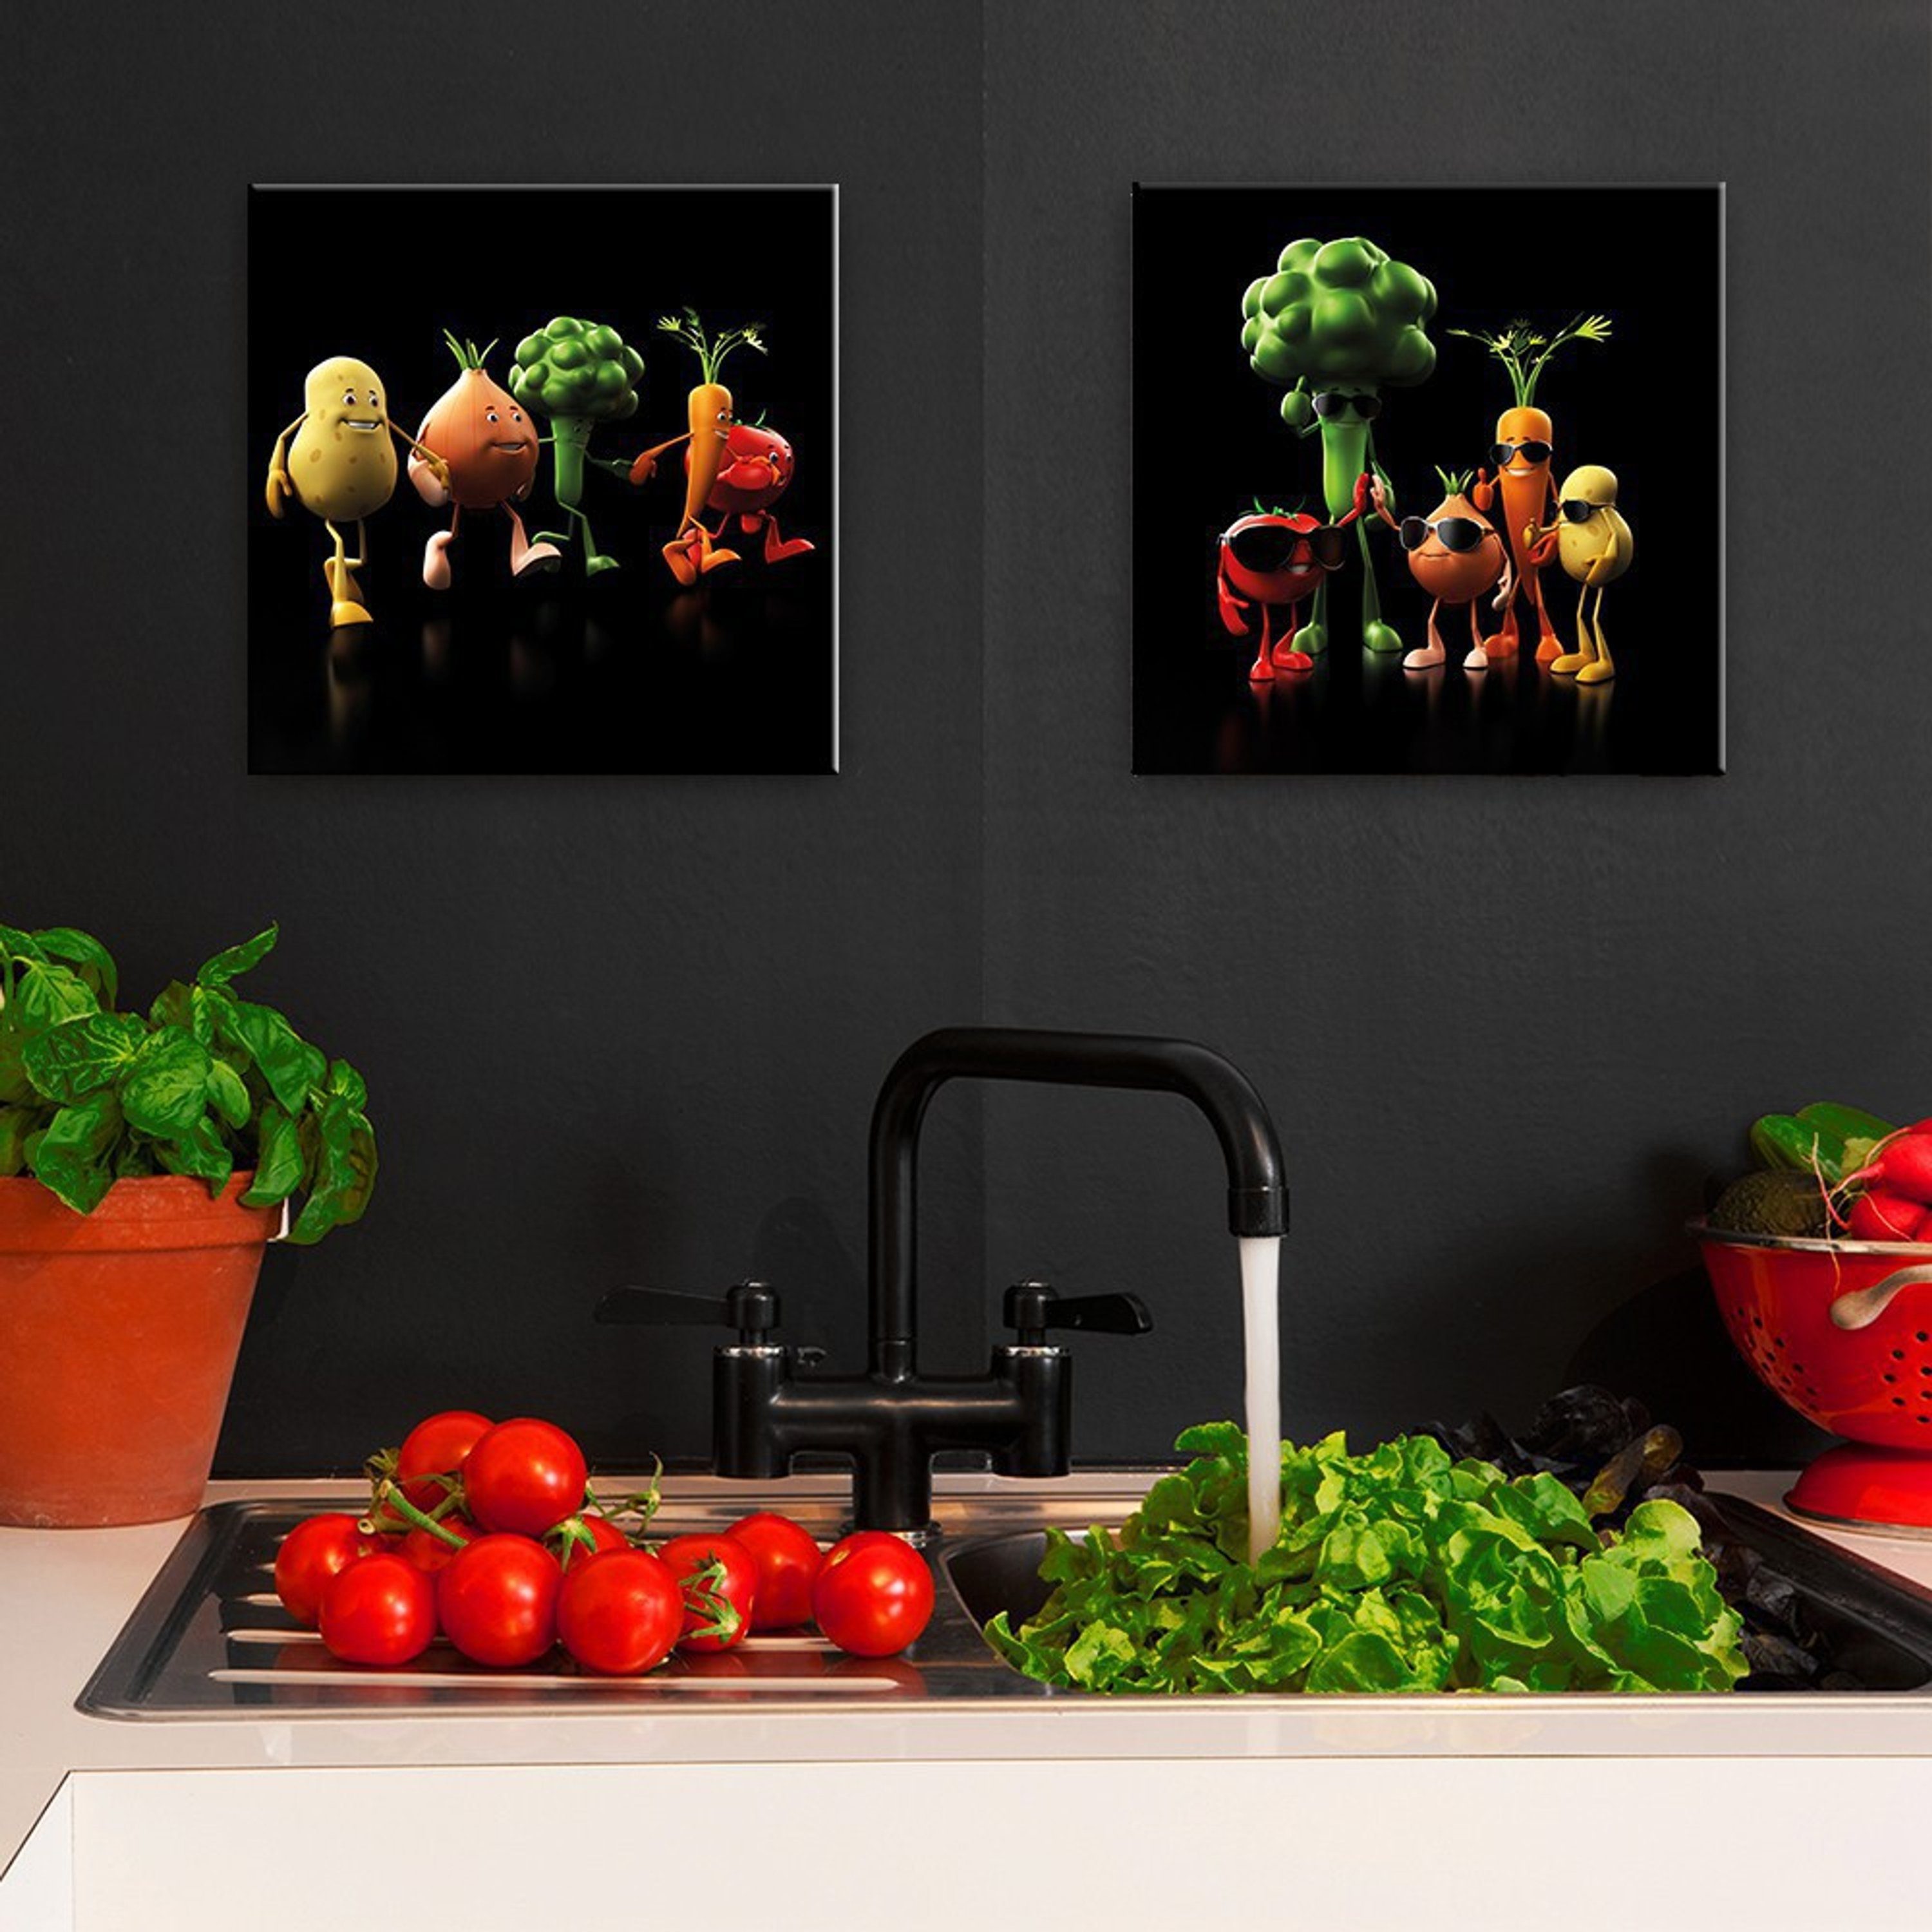 BIld Glasbild 30x30cm Küchenbild Gemüse lustig, artissimo lustiges Gemüse Küche Glasbild